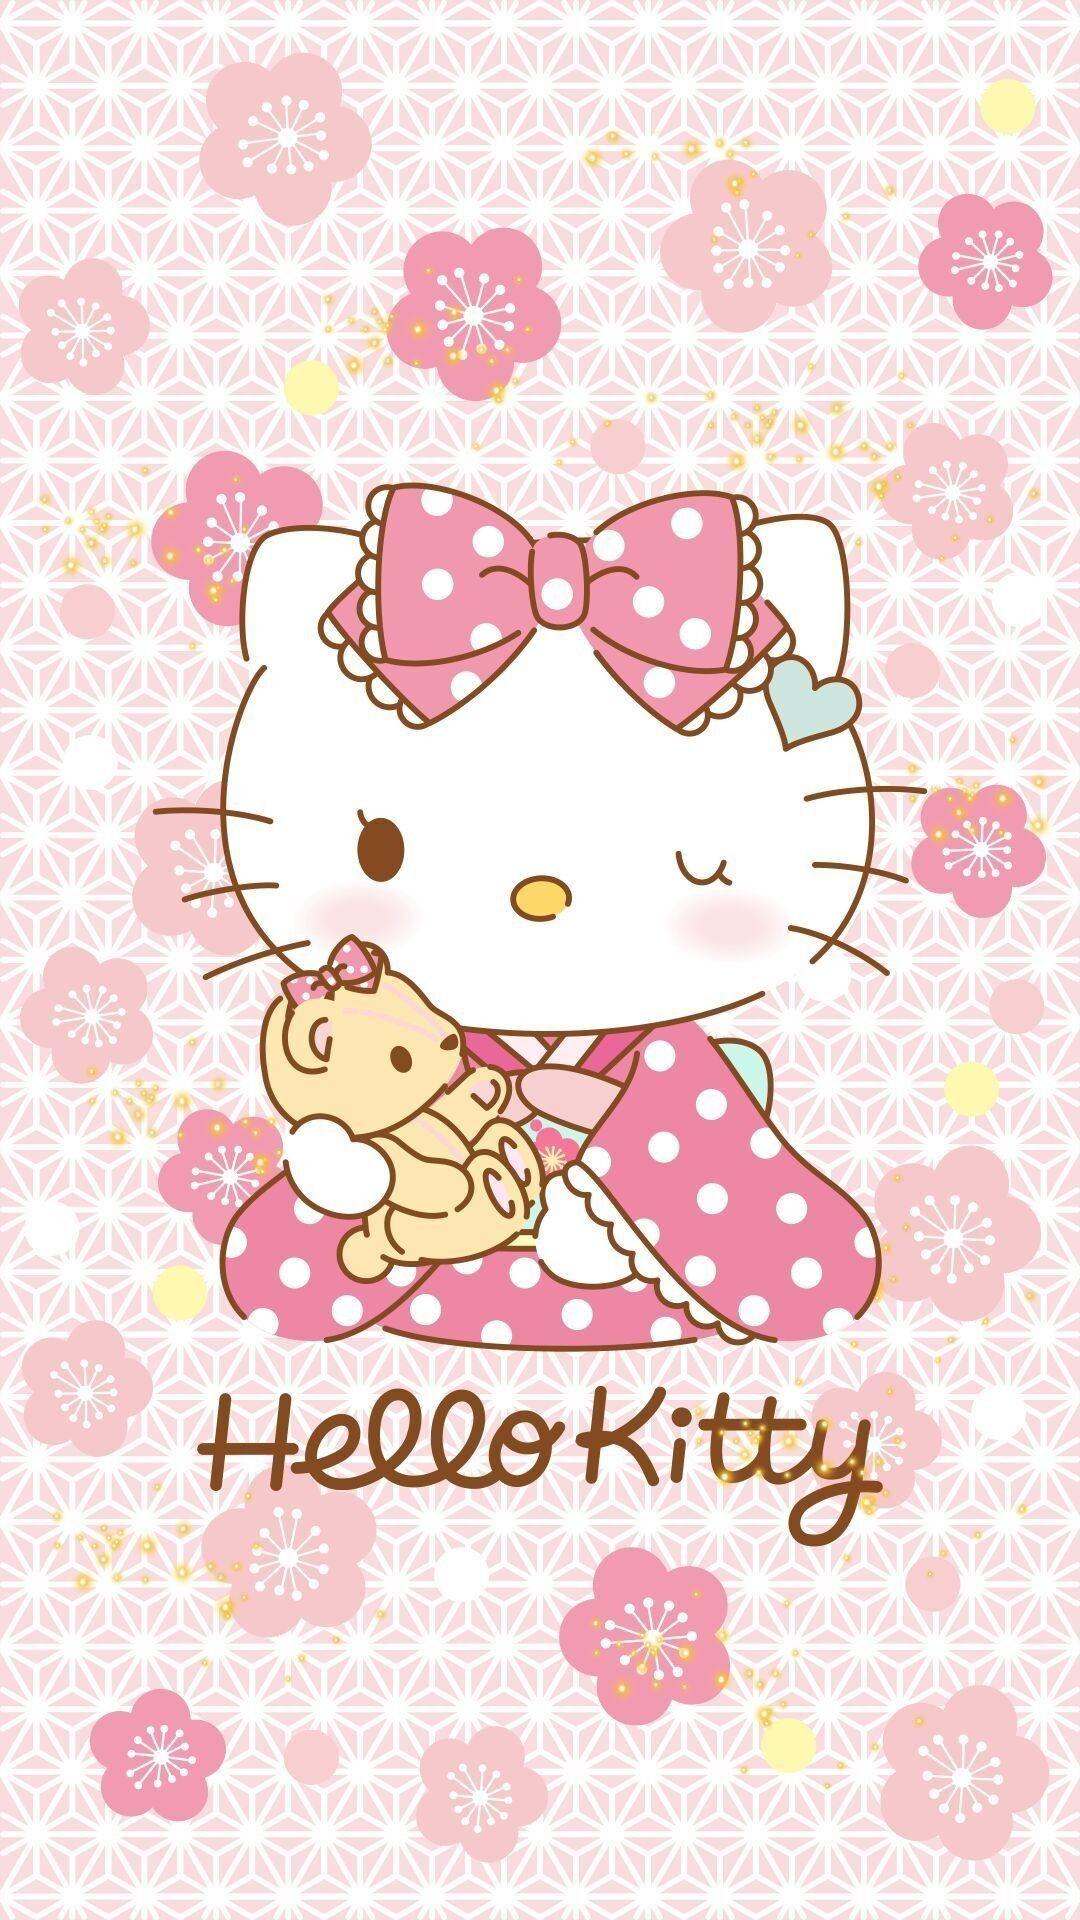 Nếu bạn yêu thích màu hồng và Hello Kitty, bộ sưu tập hình nền này chắc chắn sẽ khiến bạn cảm thấy hạnh phúc. Những hình nền này làm tôn lên sự đáng yêu và dễ thương của chú mèo Hello Kitty trên chiếc iPhone của bạn.